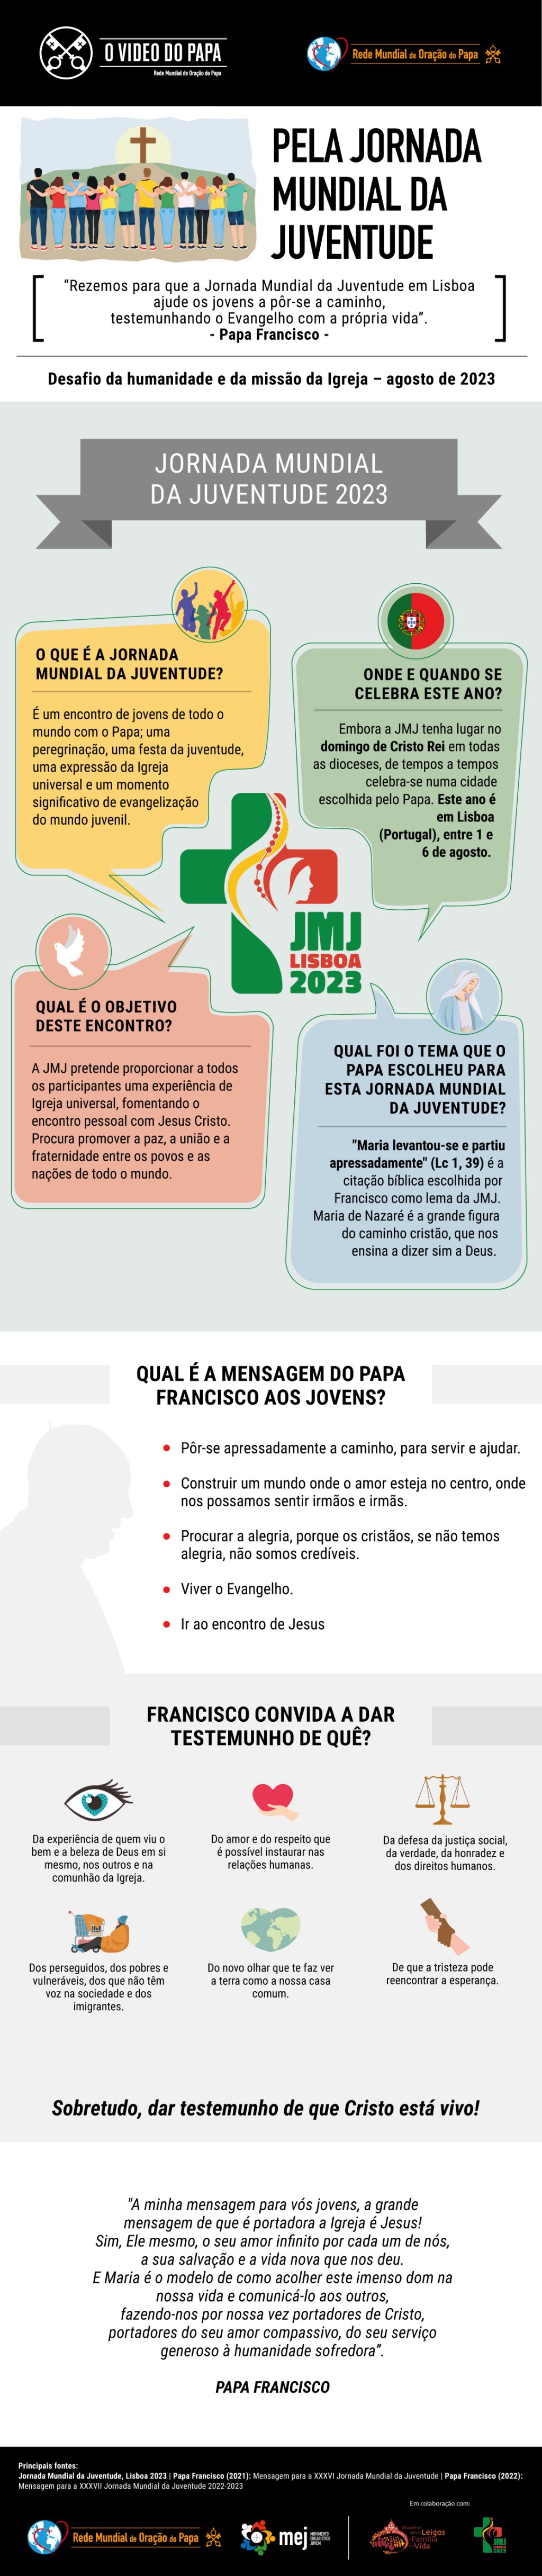 Infographic-TPV-8-2023-PT-Pela-Jornada-Mundial-da-Juventude.jpg